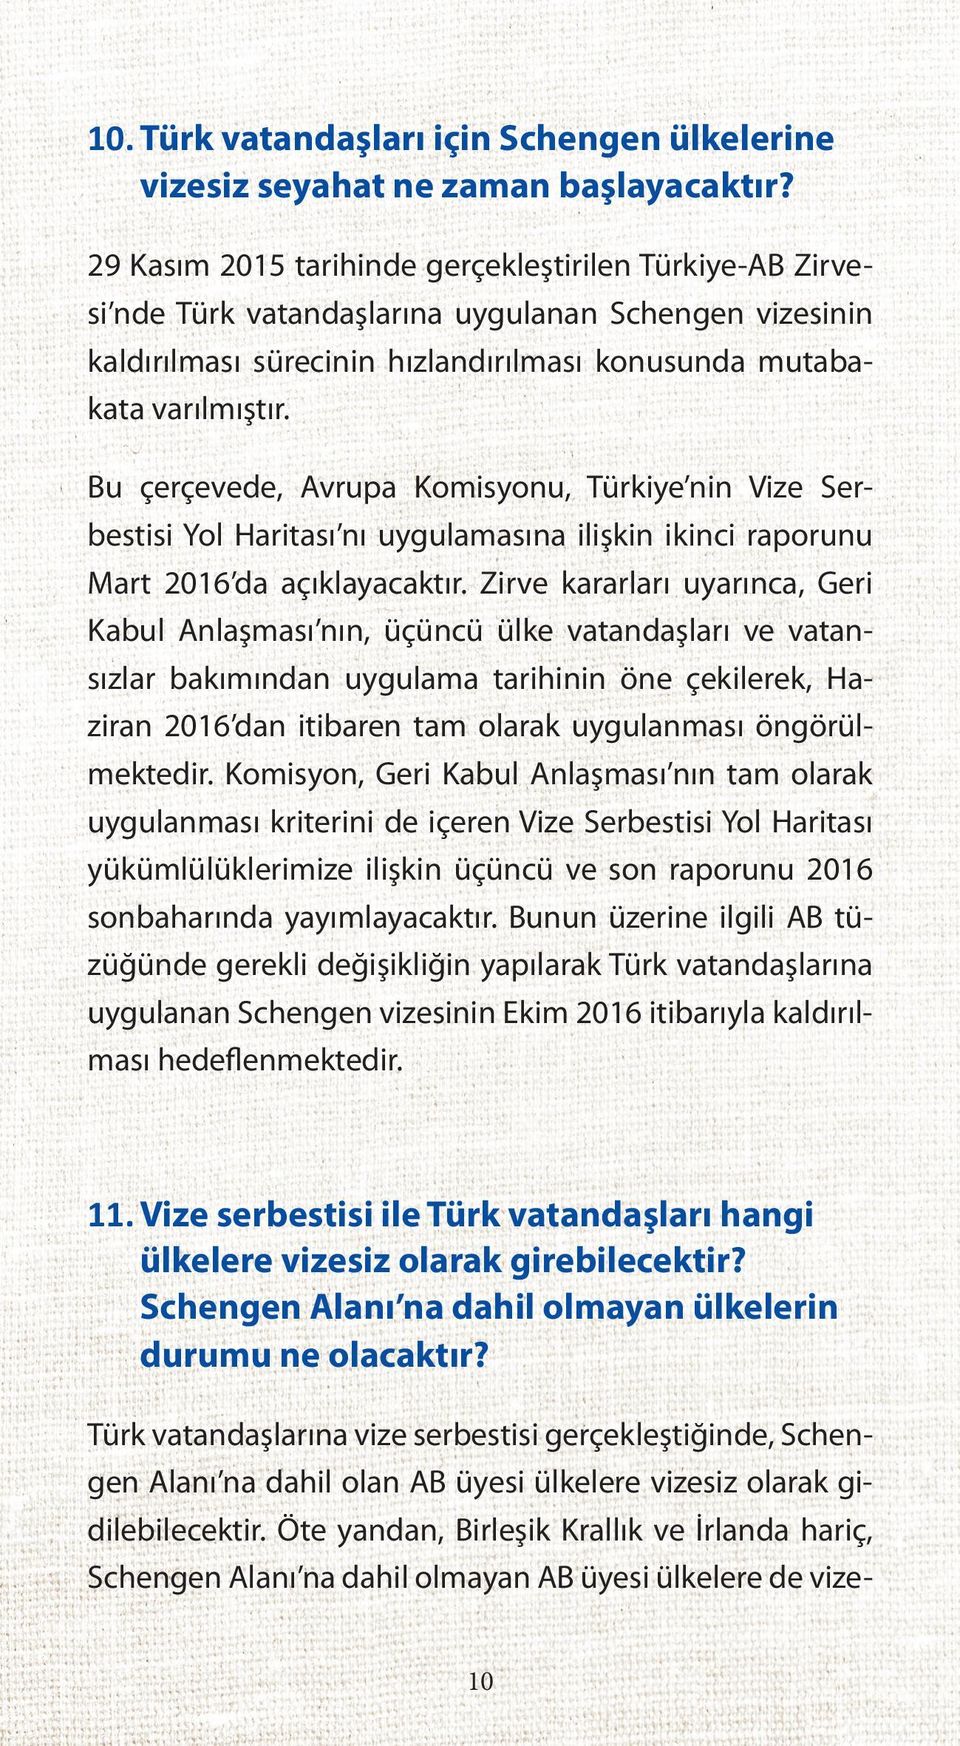 Bu çerçevede, Avrupa Komisyonu, Türkiye nin Vize Serbestisi Yol Haritası nı uygulamasına ilişkin ikinci raporunu Mart 2016 da açıklayacaktır.